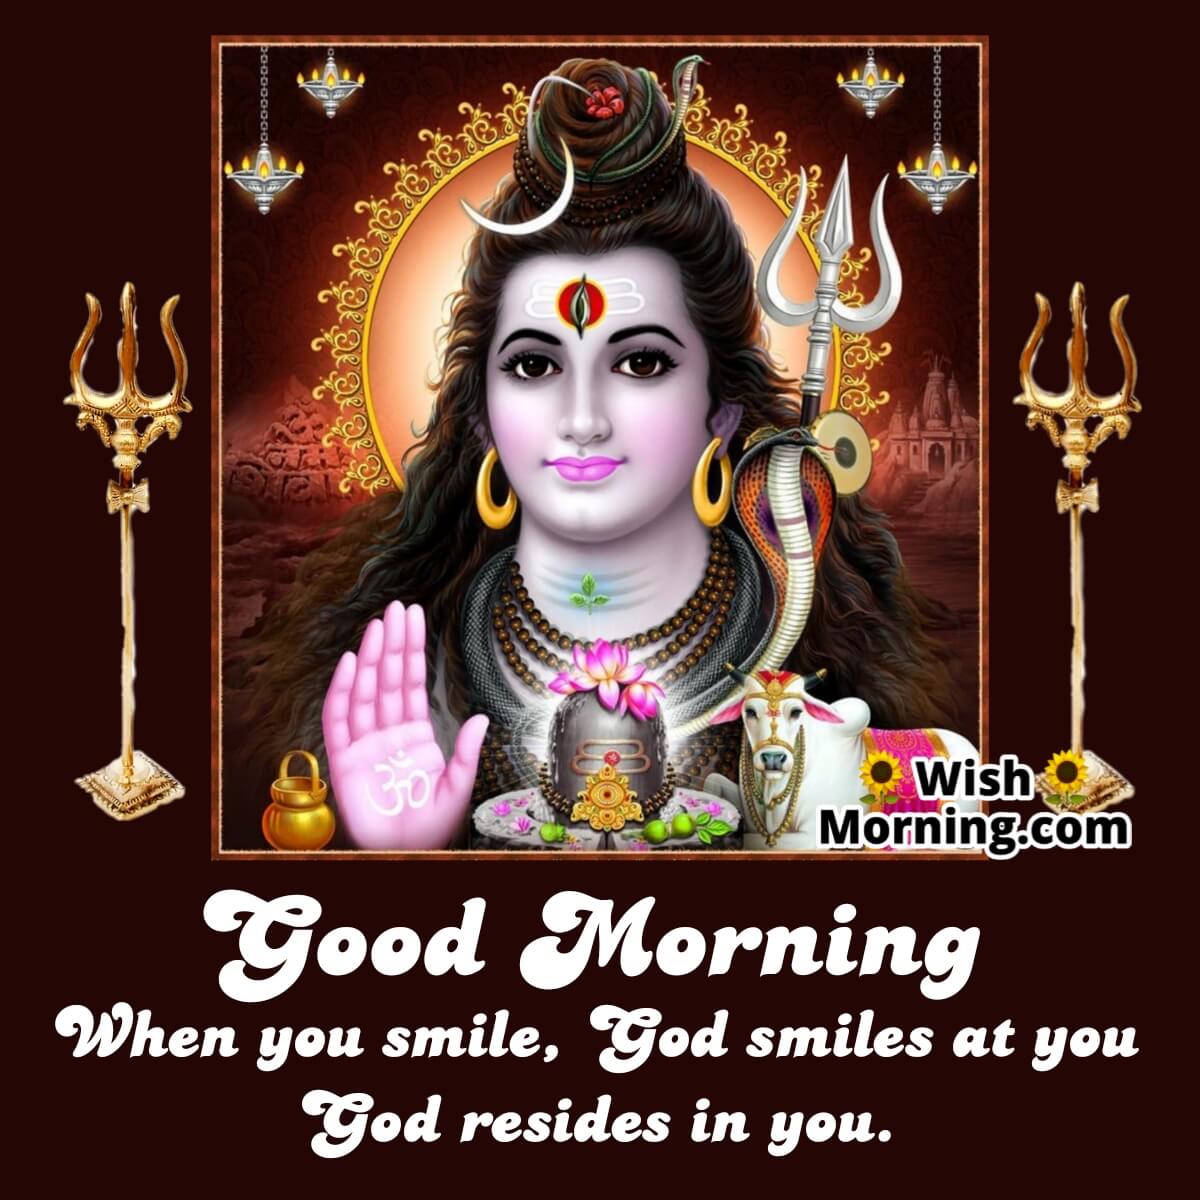 Good Morning Shiva Quotes